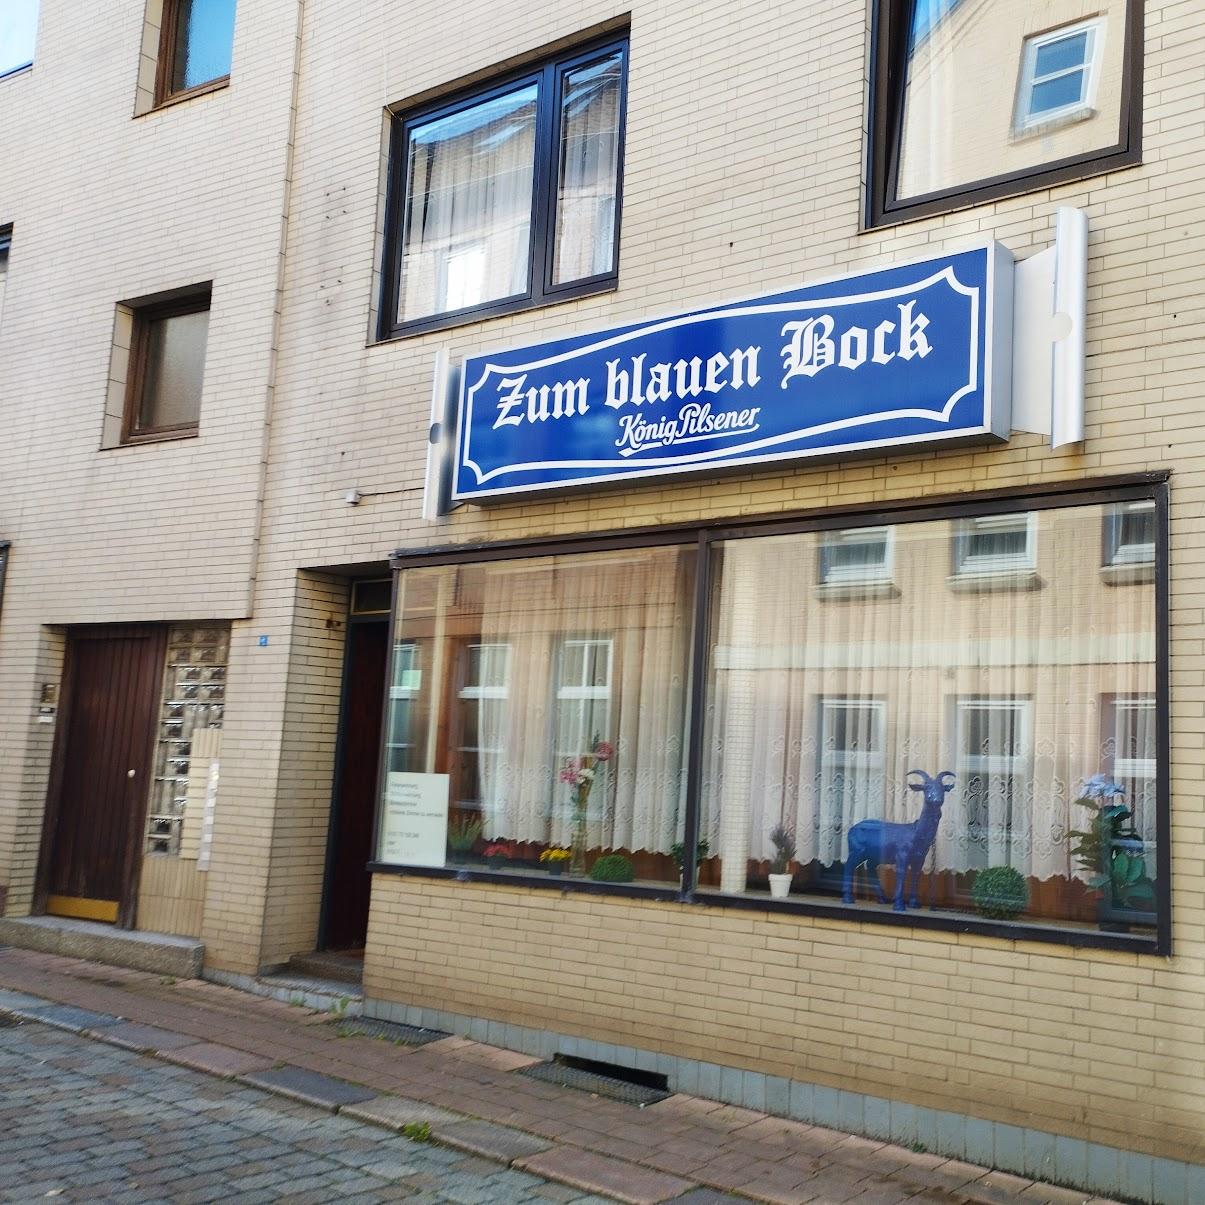 Restaurant "Zum Blauen Bock" in Rendsburg